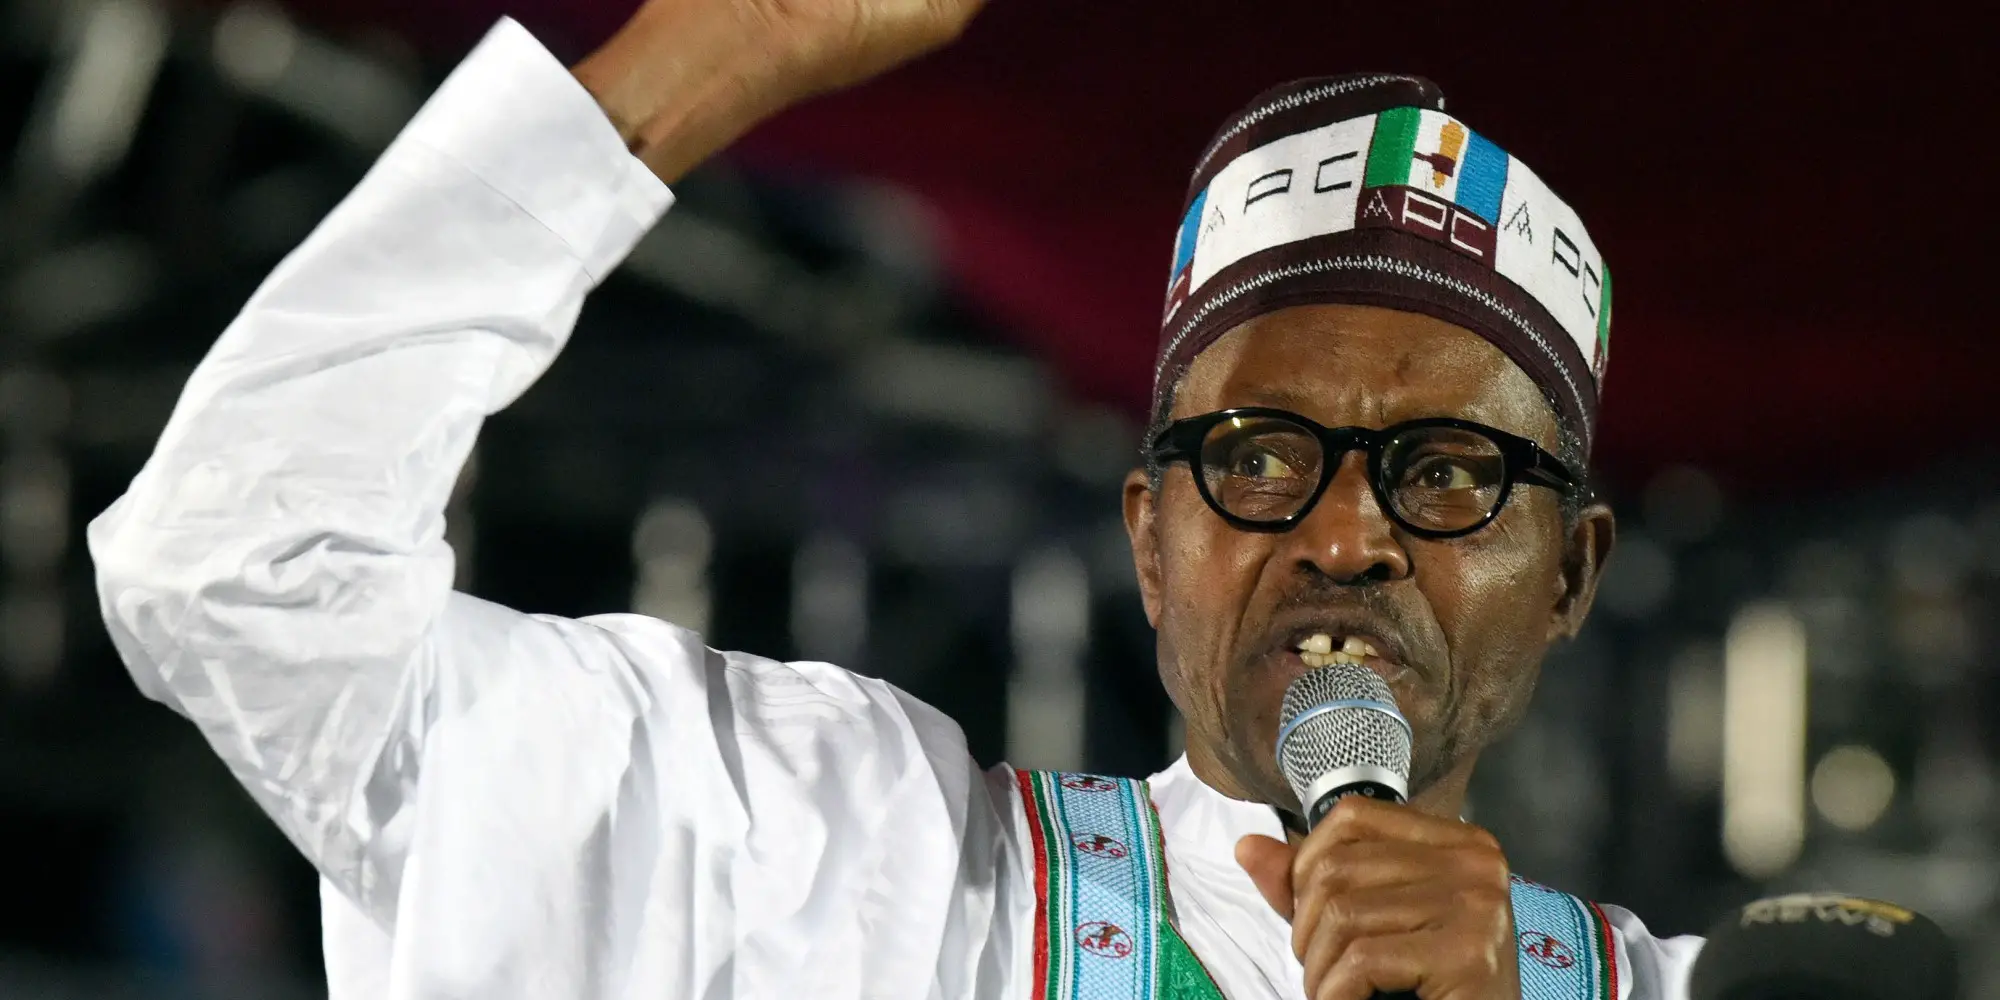 Le nouveau président élu du Nigeria, Mahamadu Buhari. Crédit photo : Sources